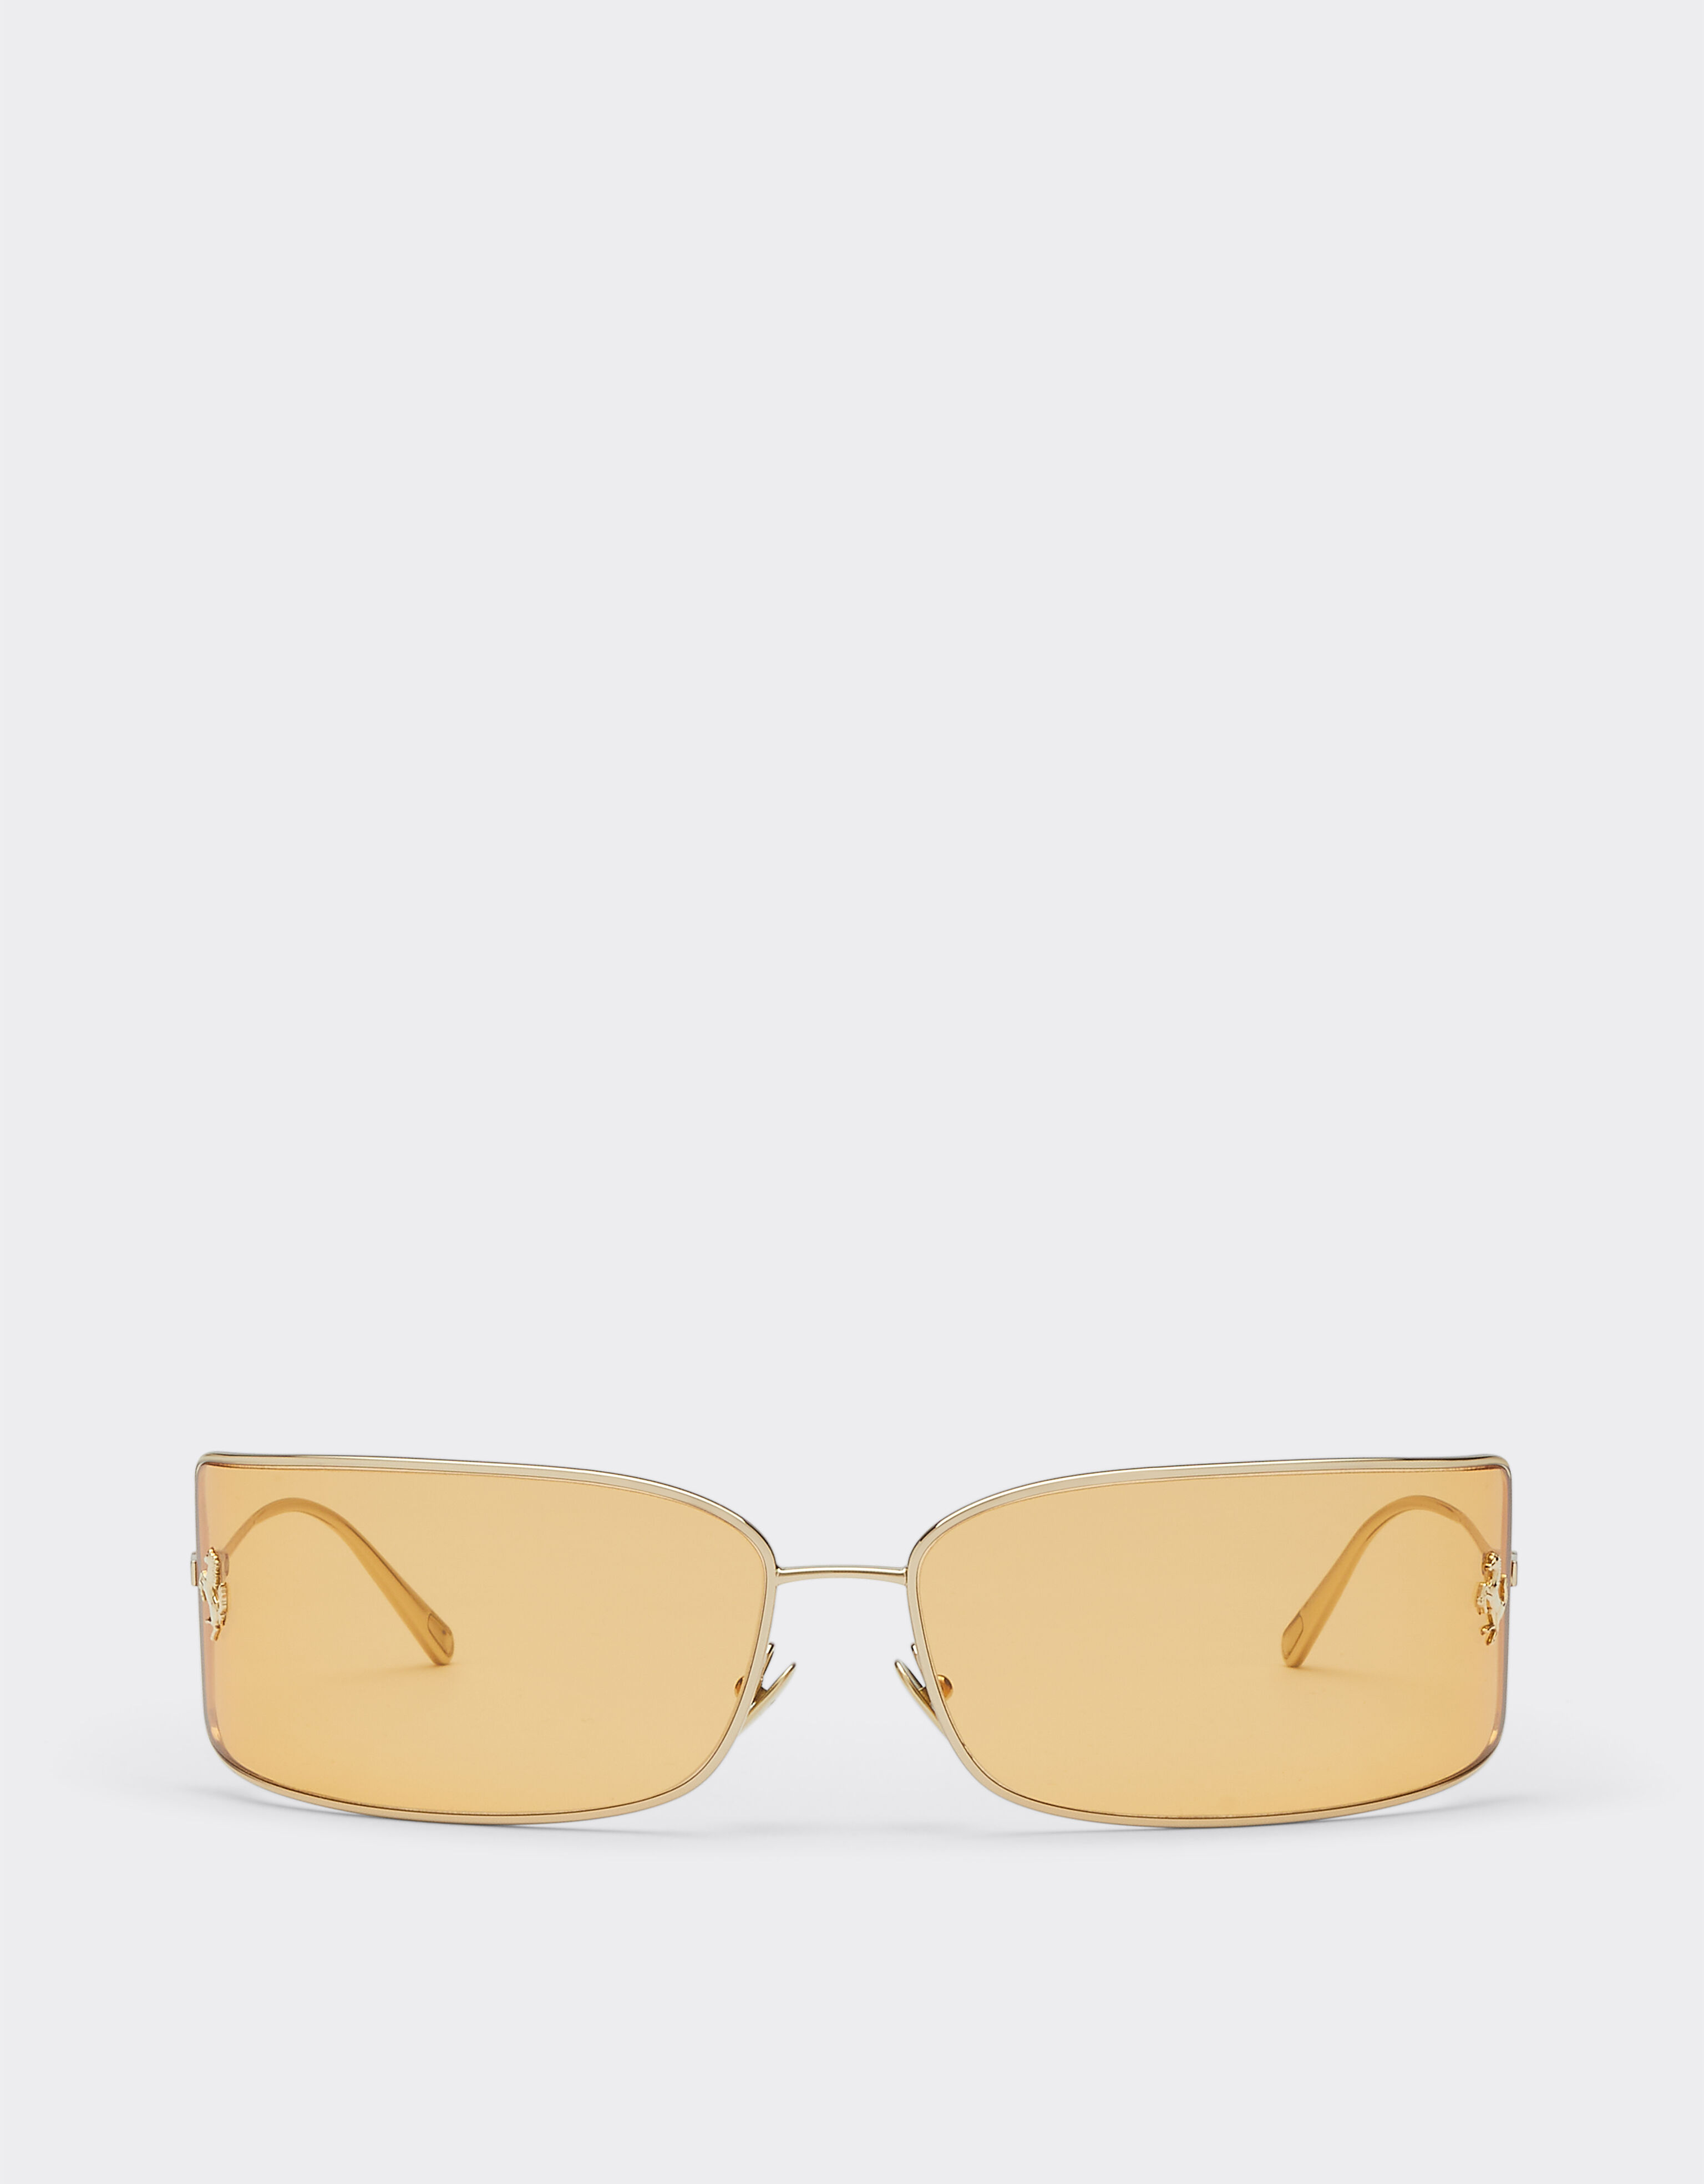 Ferrari Ferrari-Sonnenbrille mit goldenen Gläsern Silber F1247f